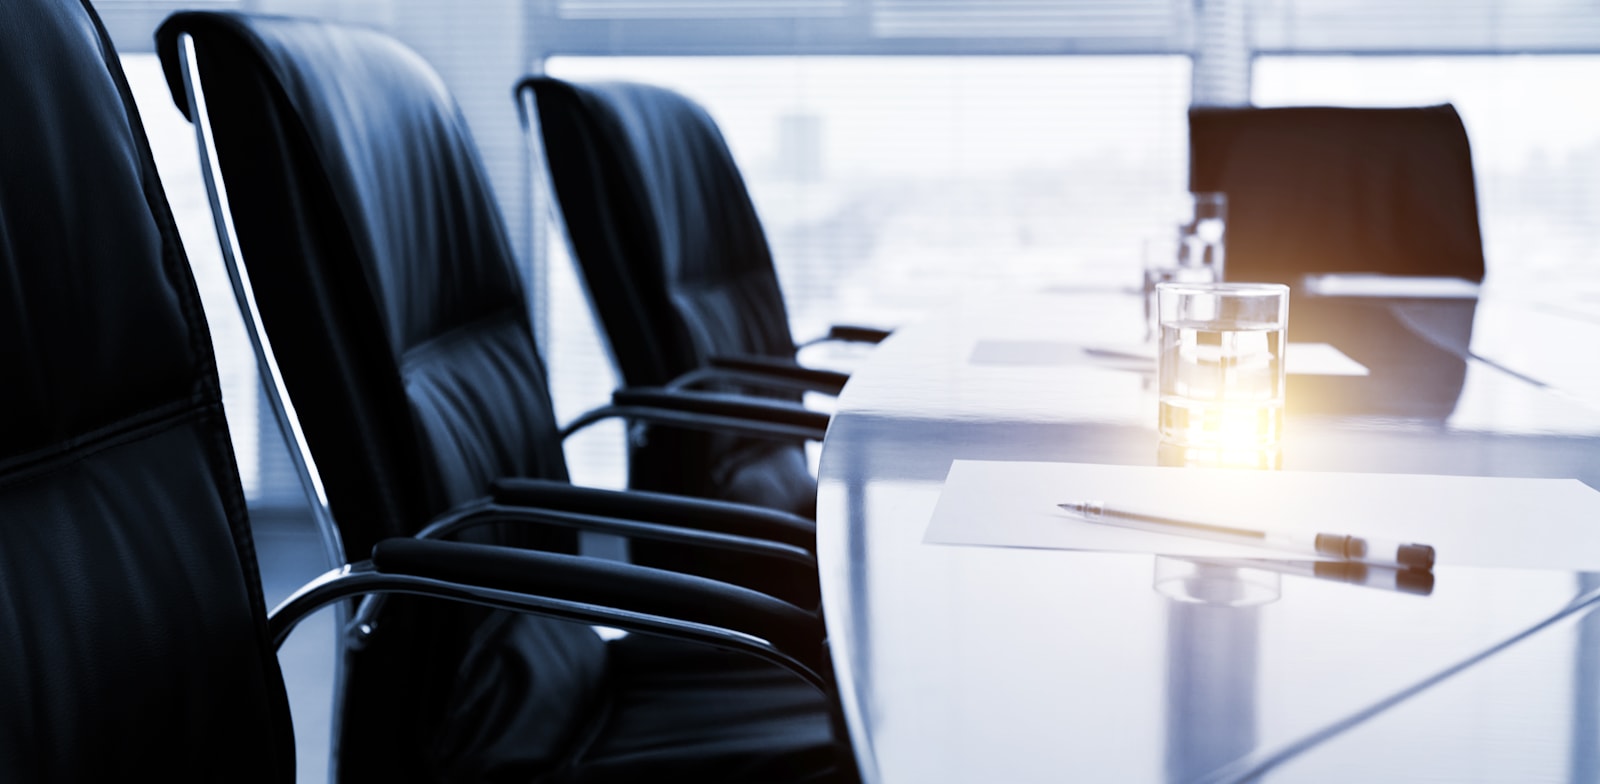 מידור ההנהלה בוועדות הבלתי תלויות עלול להזיק לבעלי המניות / צילום: Shutterstock